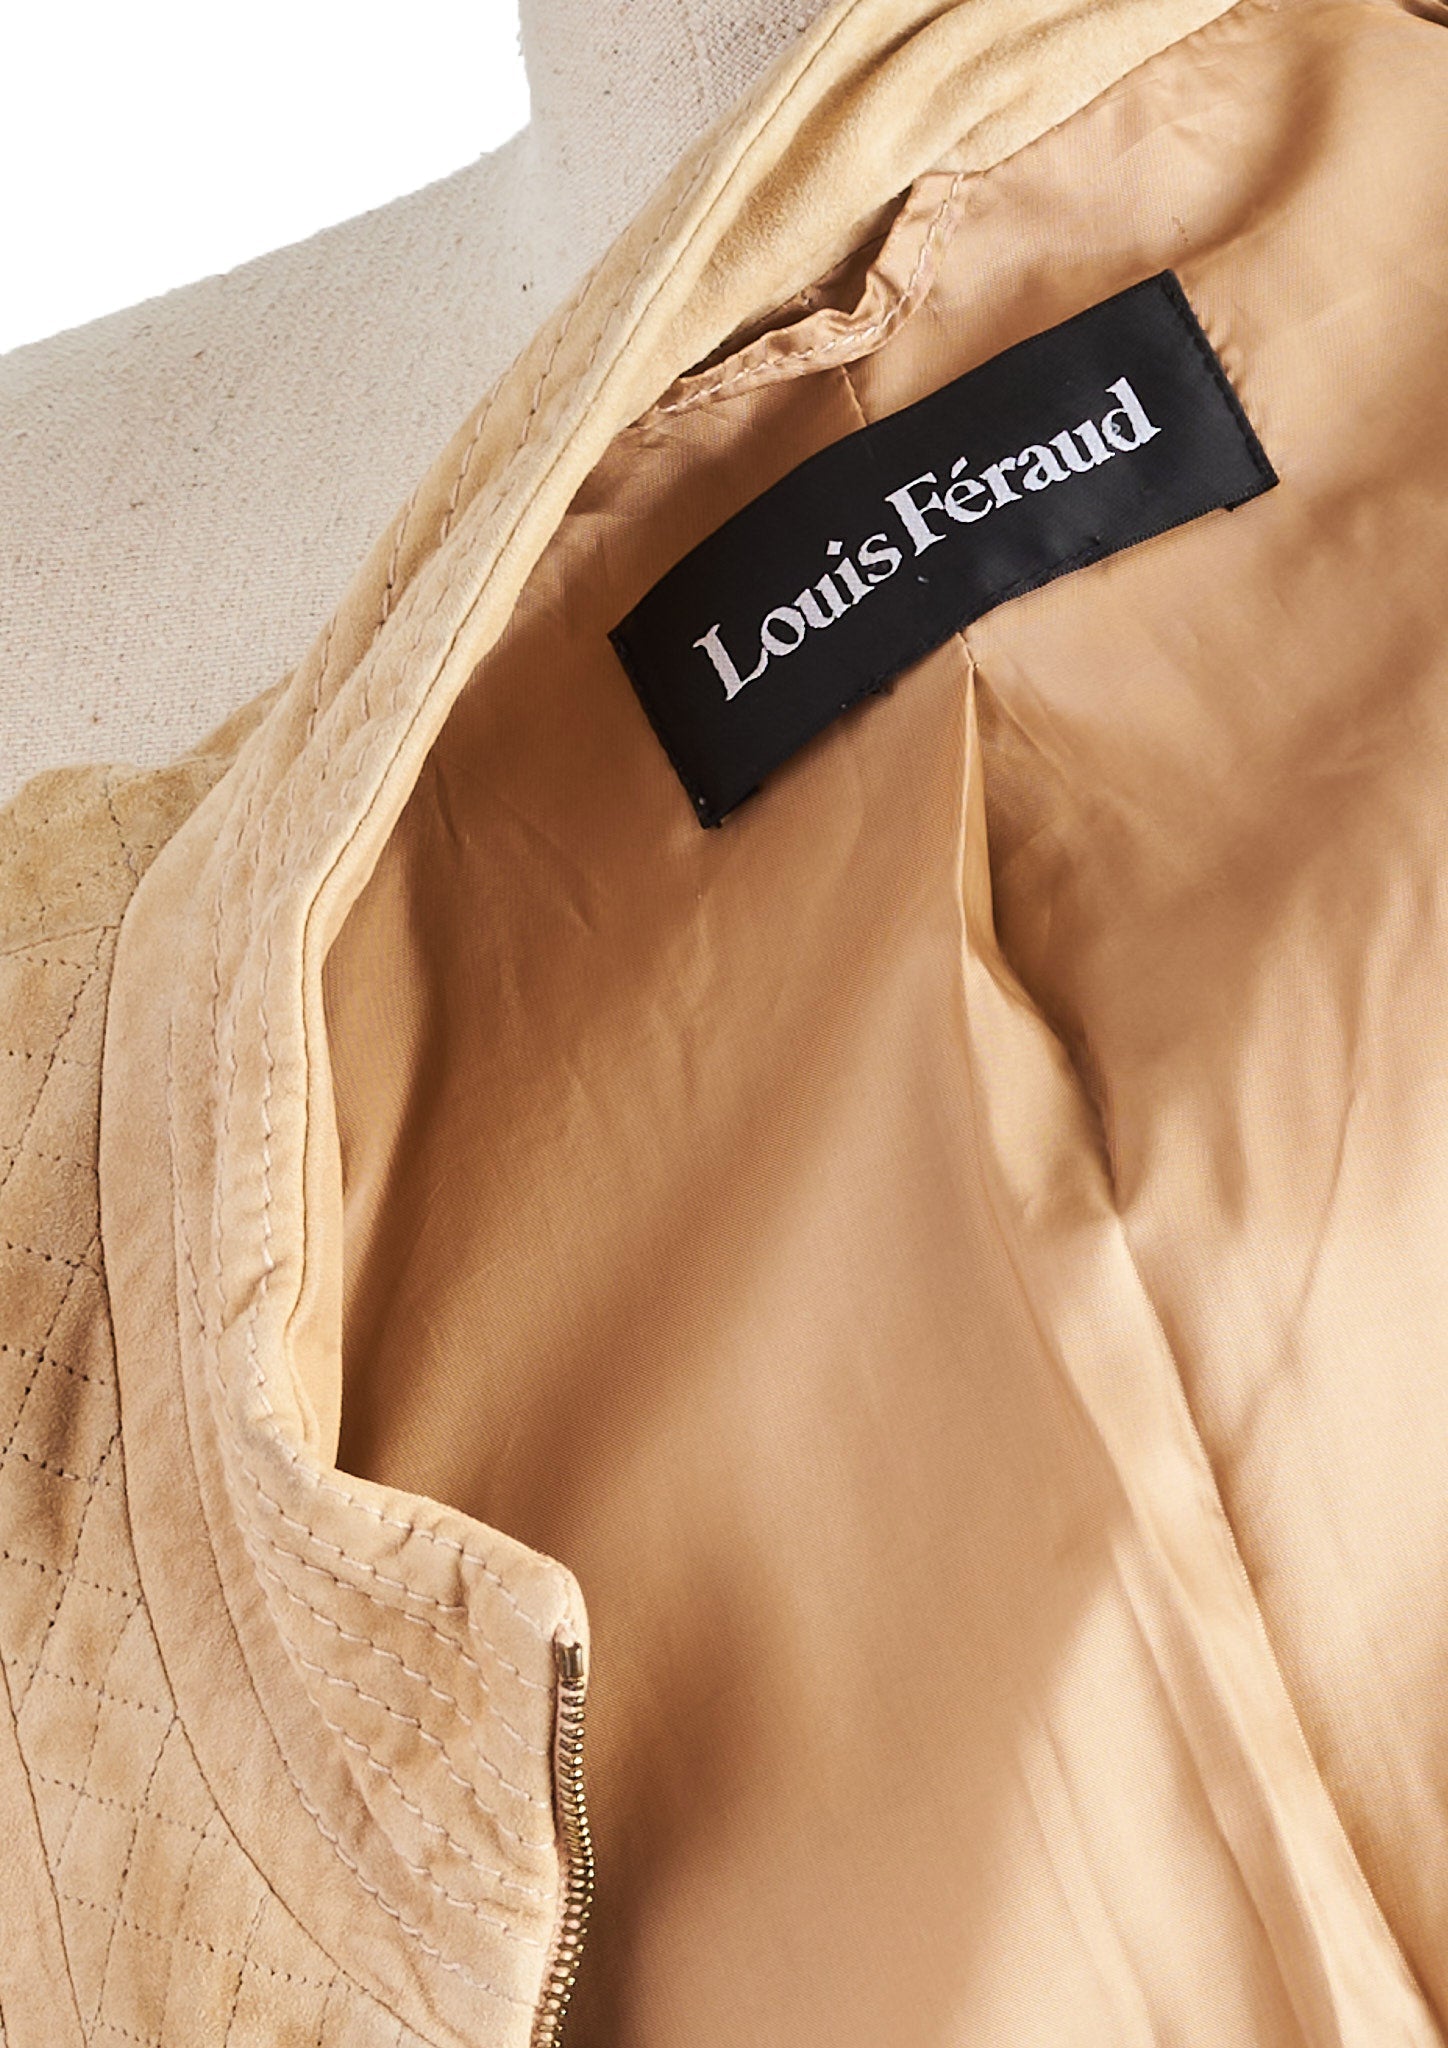 Louis Feraud, Jackets & Coats, Vintage Designer Louis Feraud Blue Floral  Skirt Suit